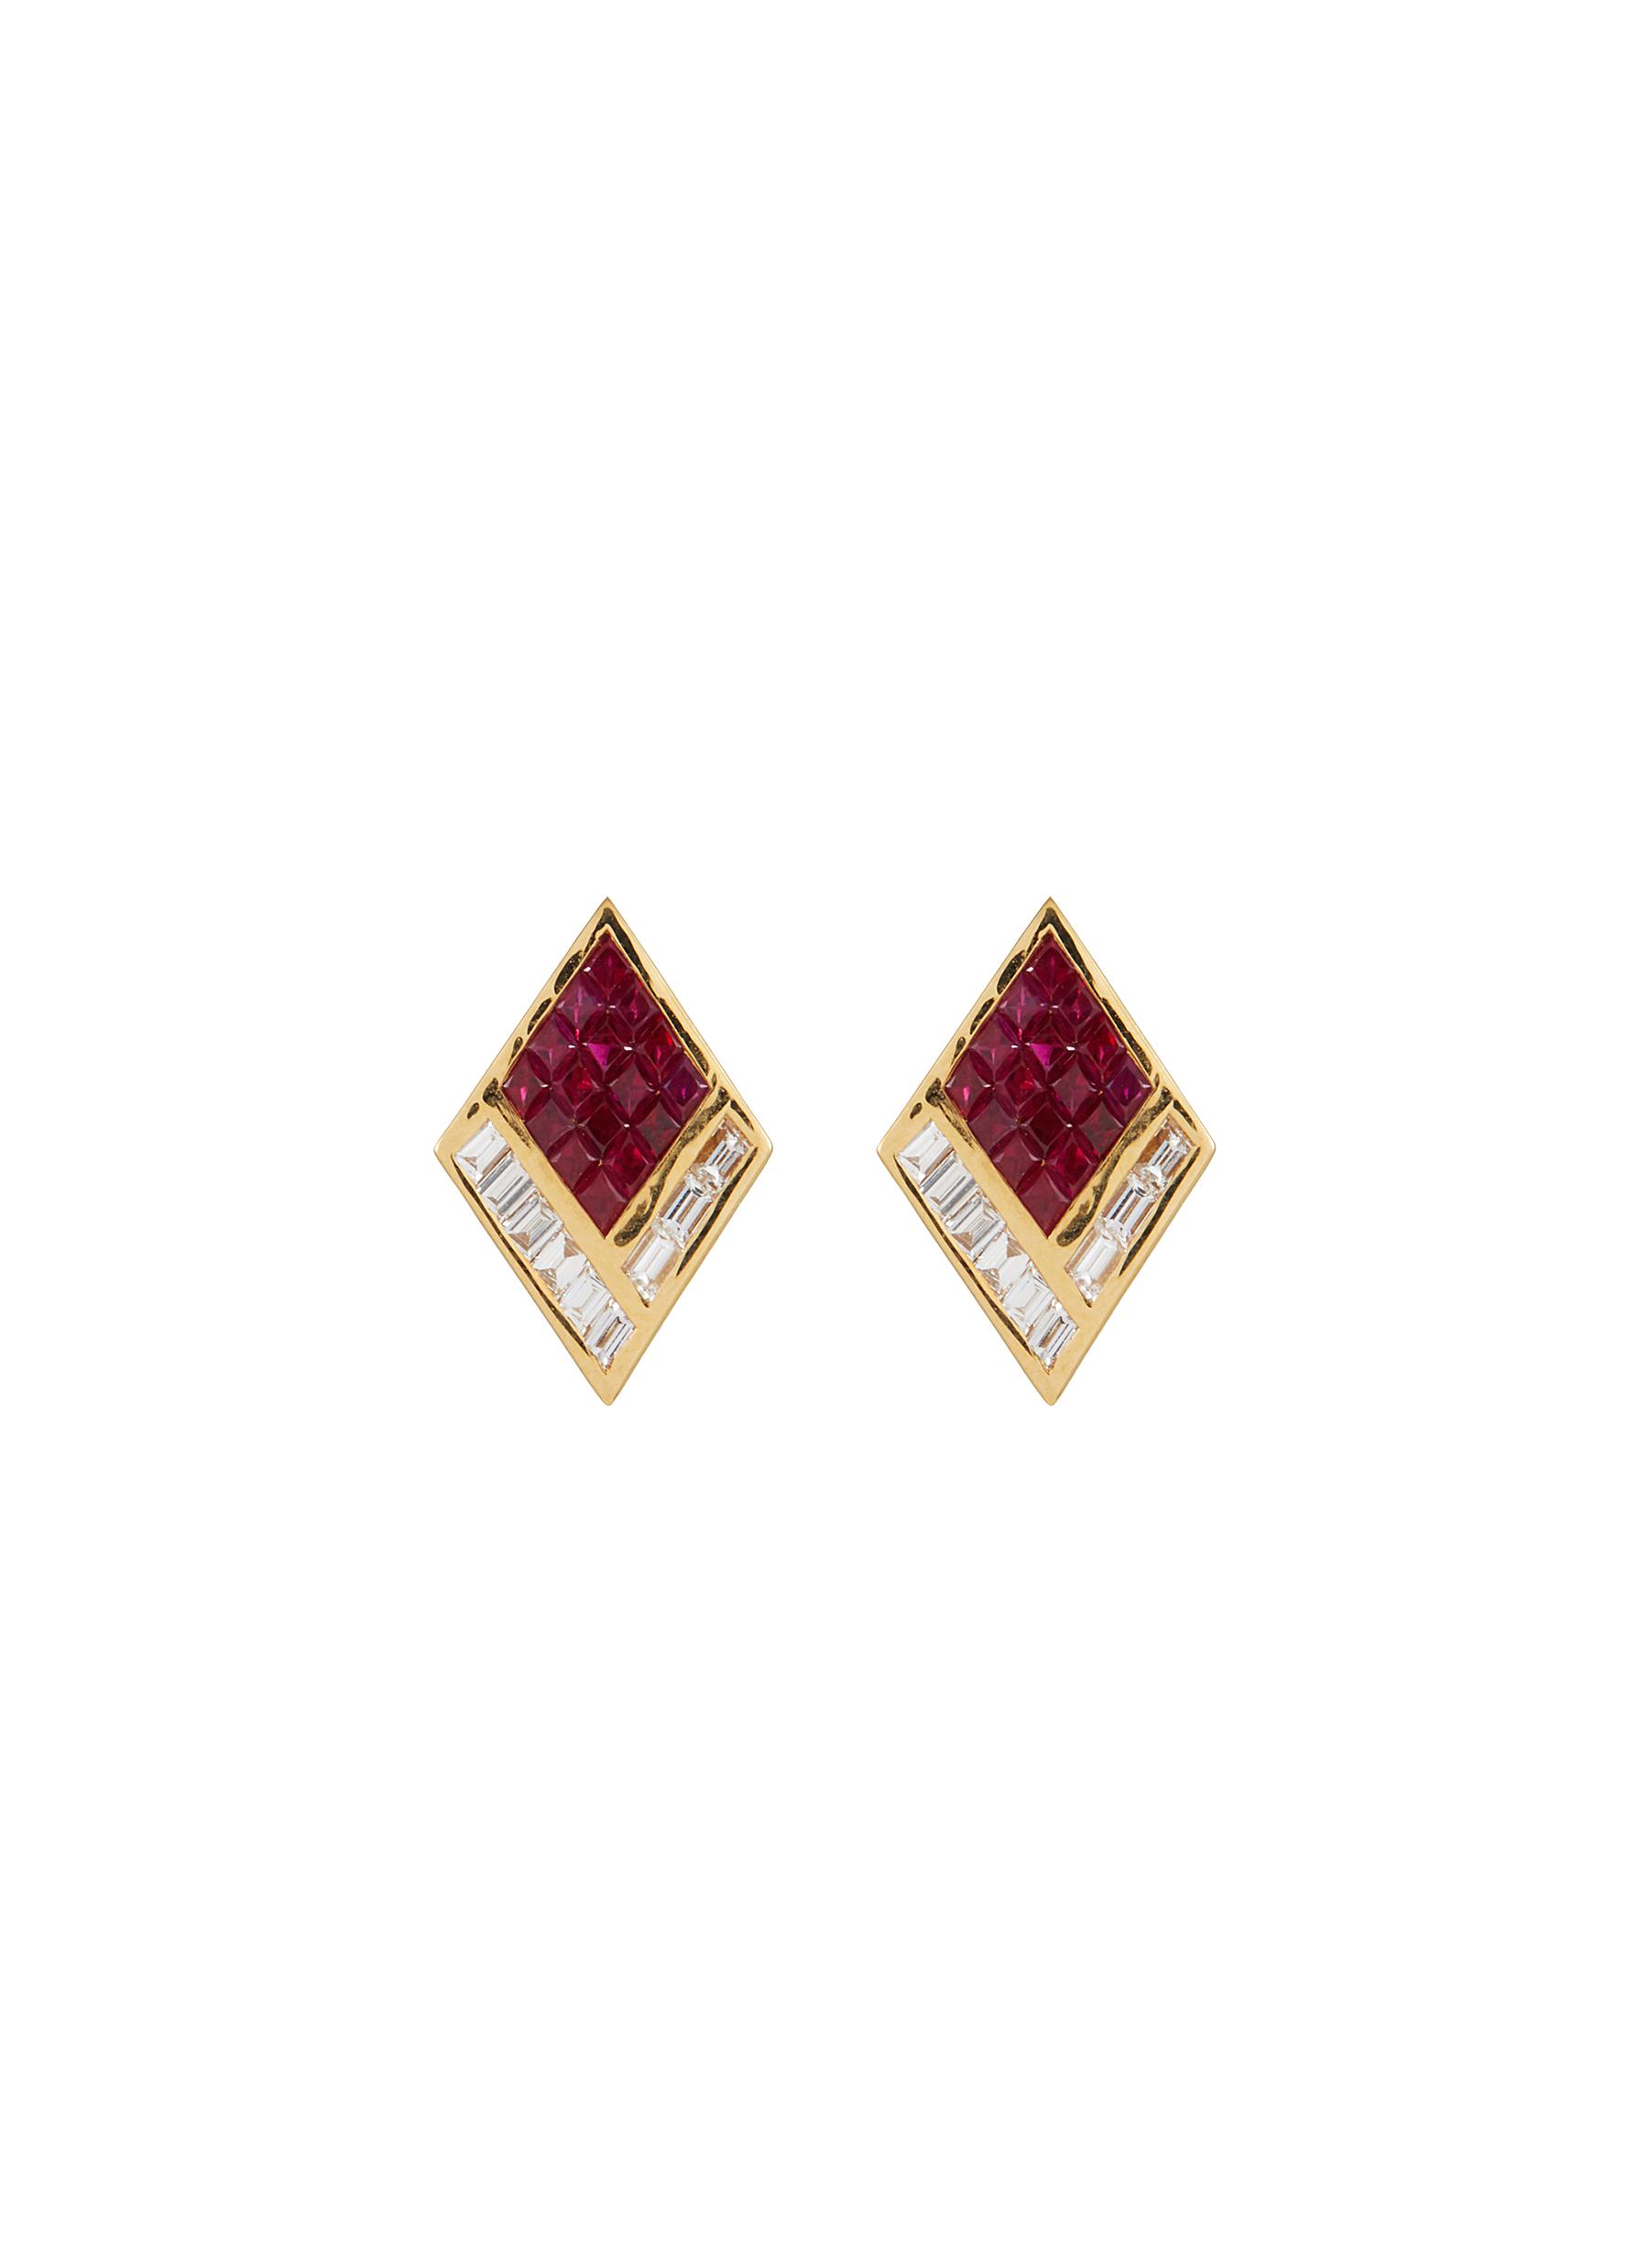 KAVANT & SHARART ‘GeoArt' Diamond Ruby 18K Gold Rhombus Stud Earrings